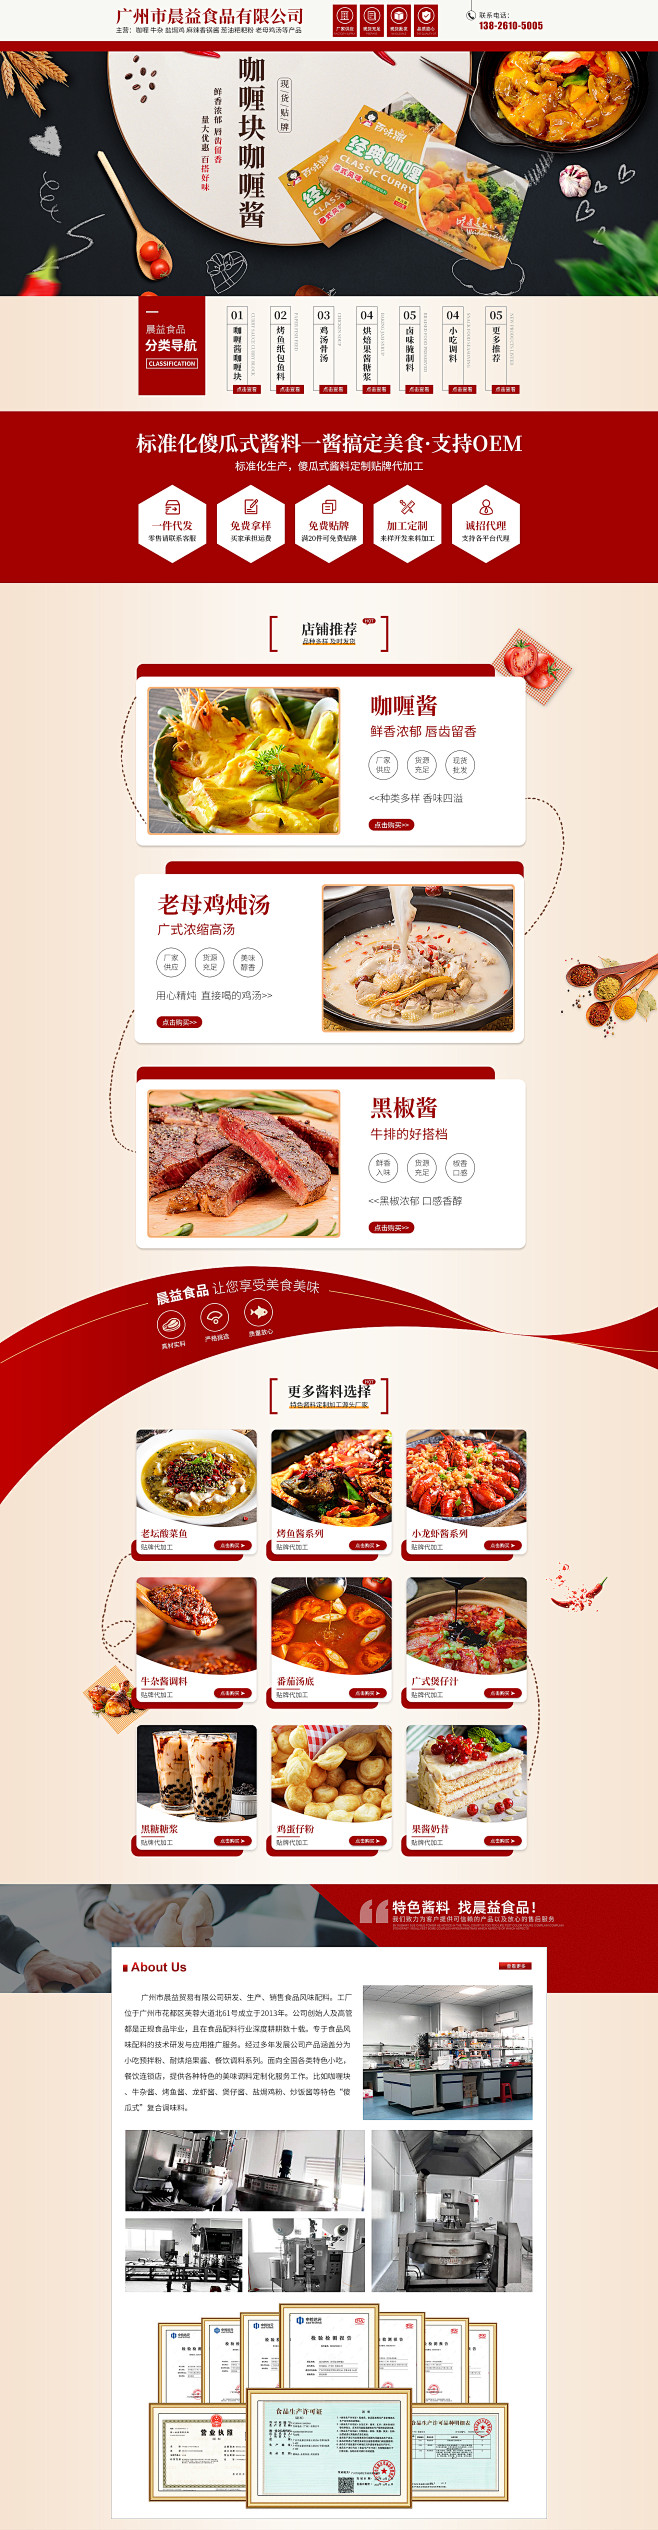 广州市晨益食品有限公司首页2版